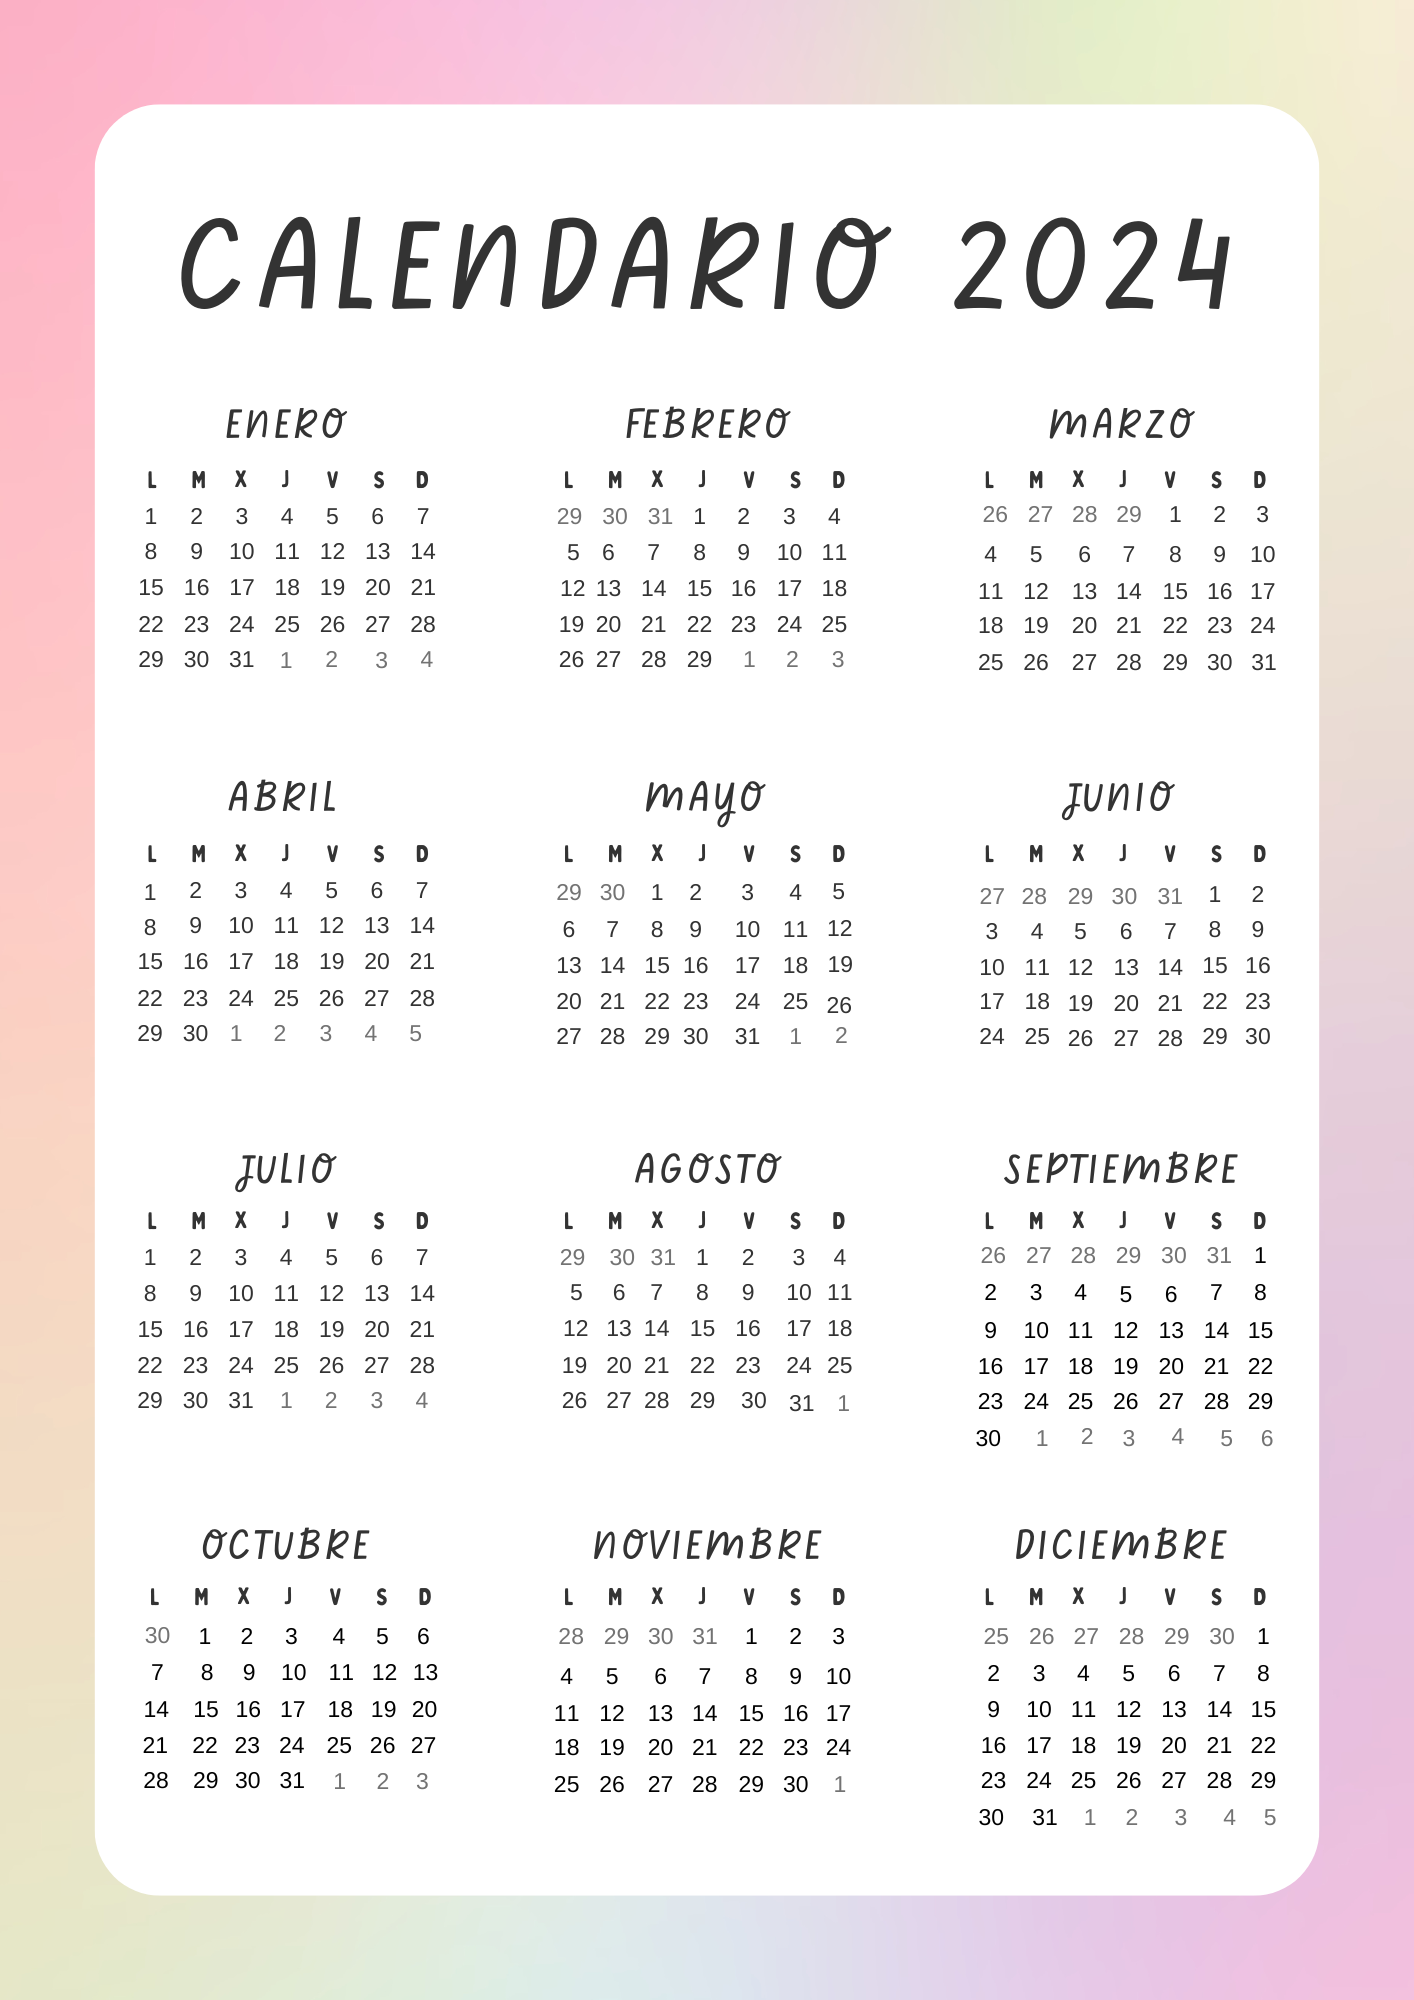 Calendario anual colores pasteles 2024 (JPG)